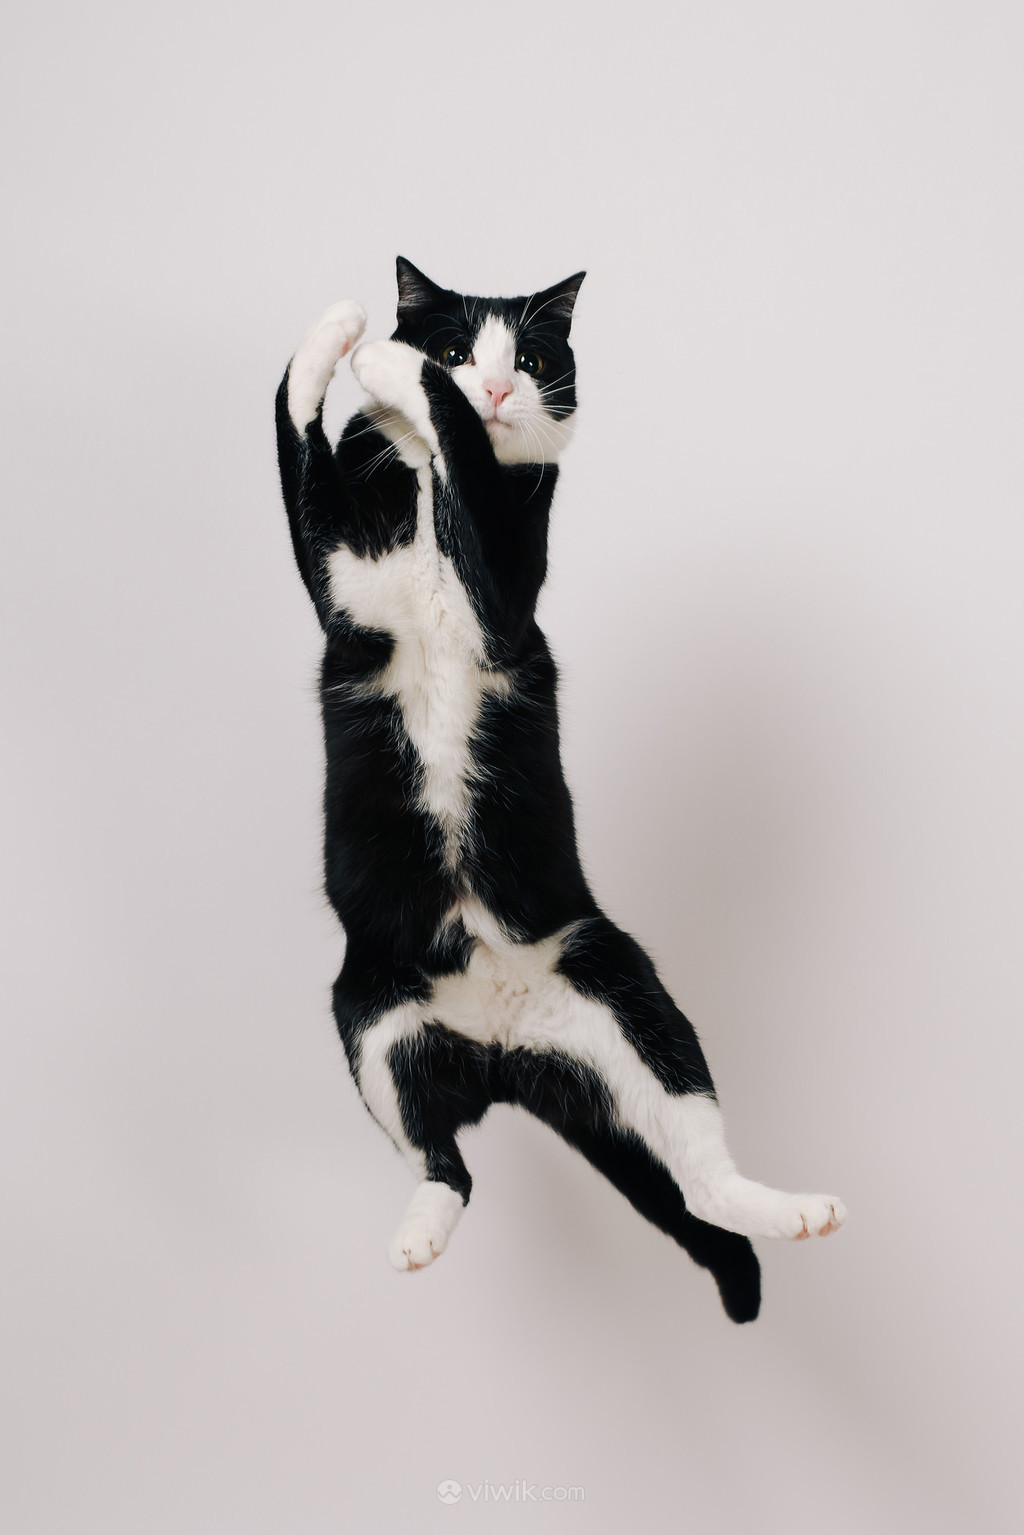 Cats Jump Play - Free photo on Pixabay - Pixabay